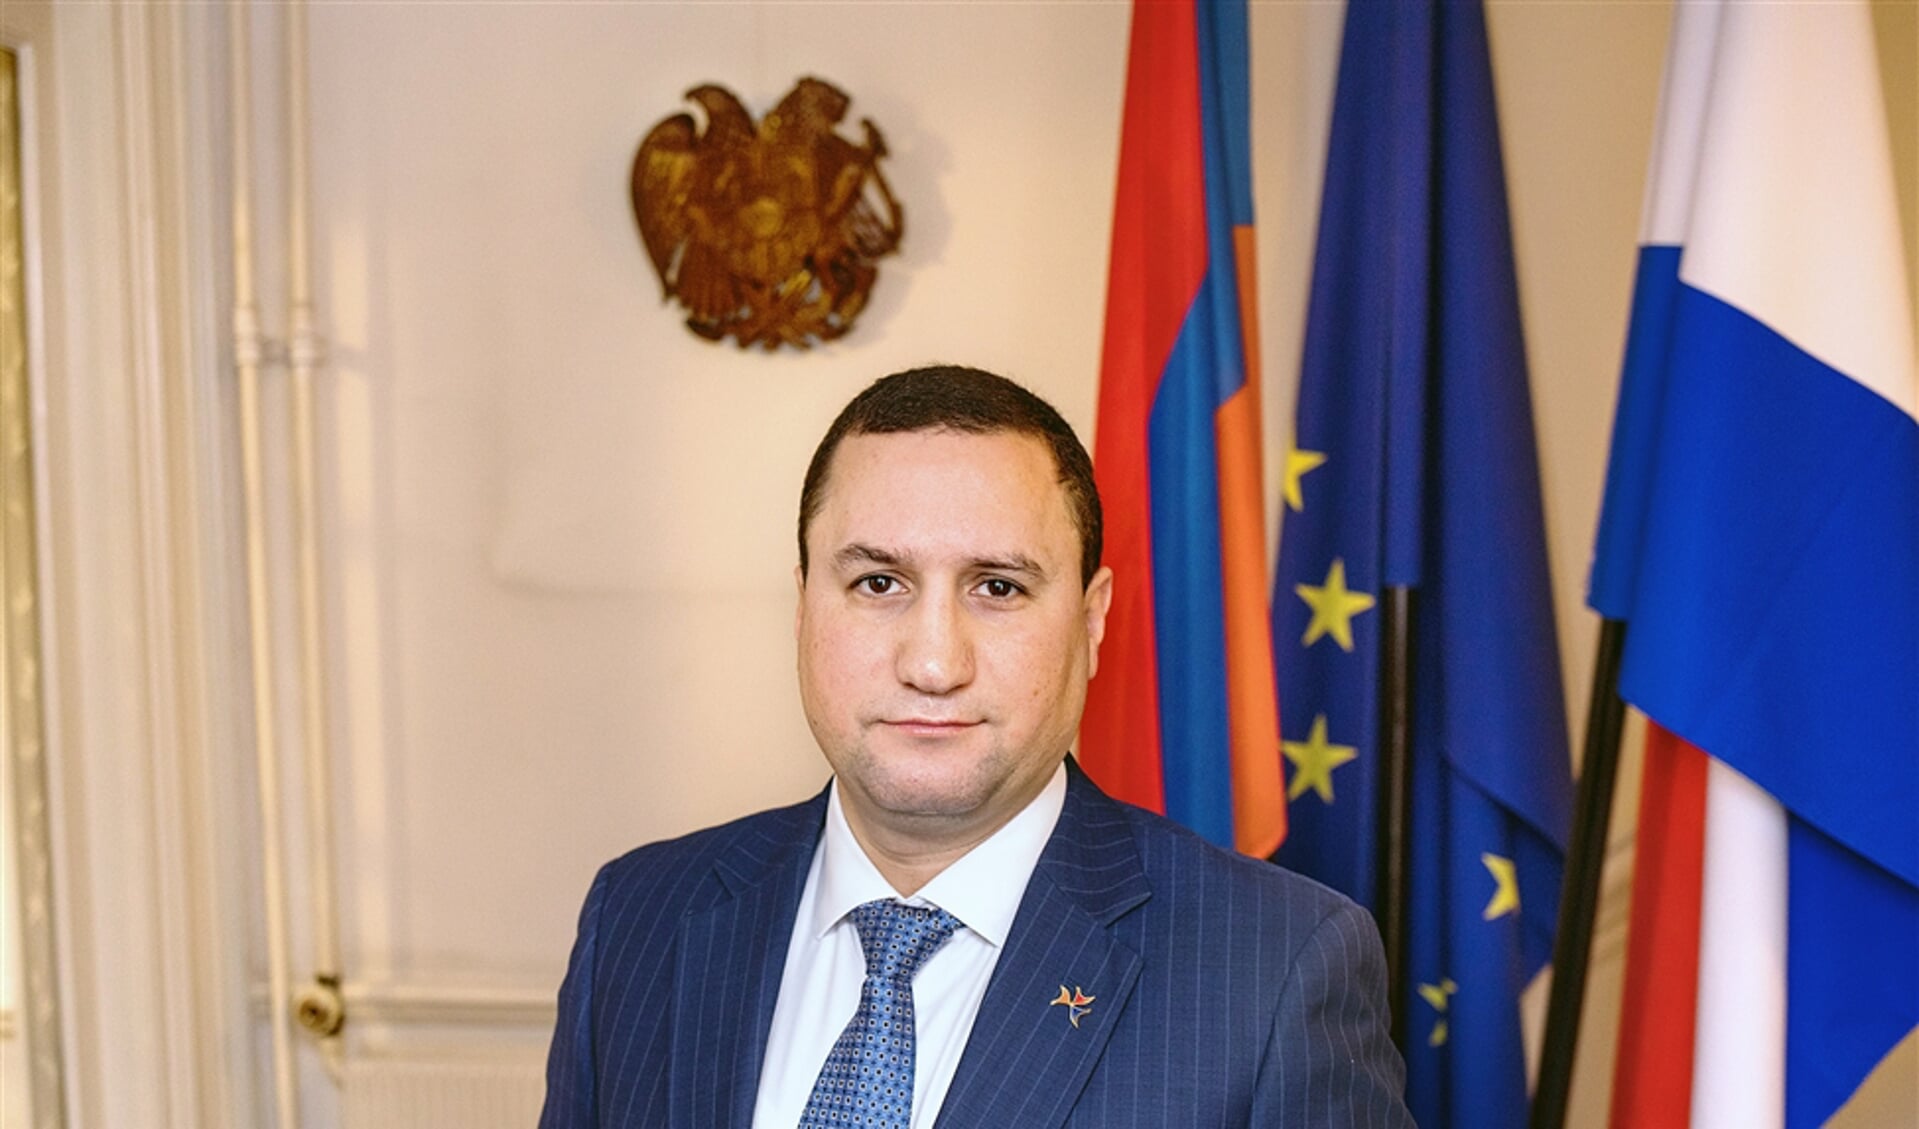 Ambassadeur Tigran Balayan van Armenië, gefotografeerd bij de Armeense, de Europese en de Nederlandse vlag.